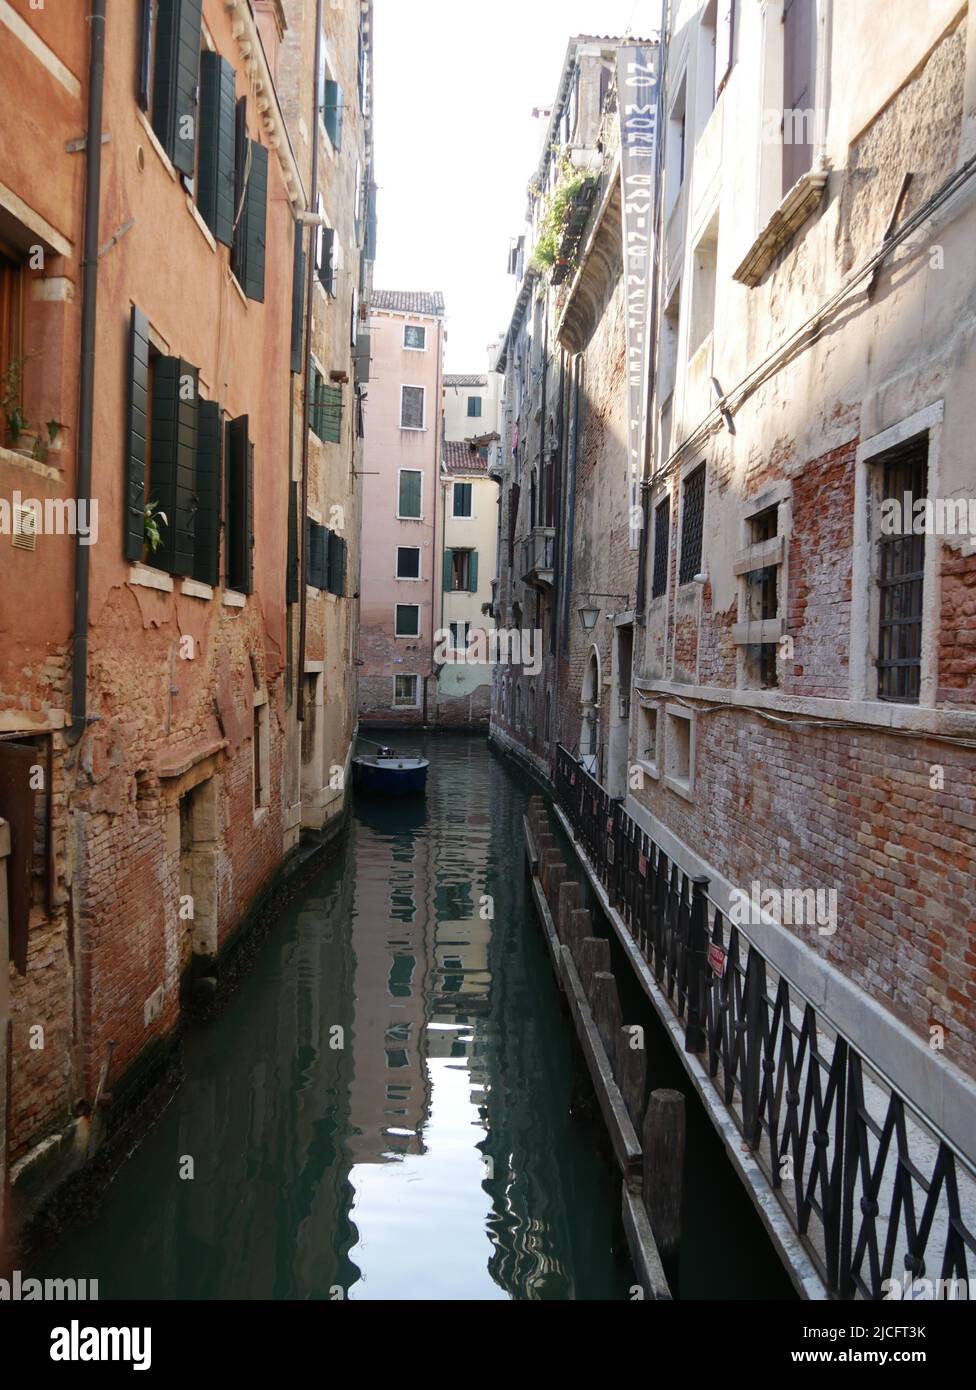 Venezia e la sua laguna sono Patrimonio Mondiale UNESCO.  Venezia si sviluppa su 118 isolette. Stock Photo